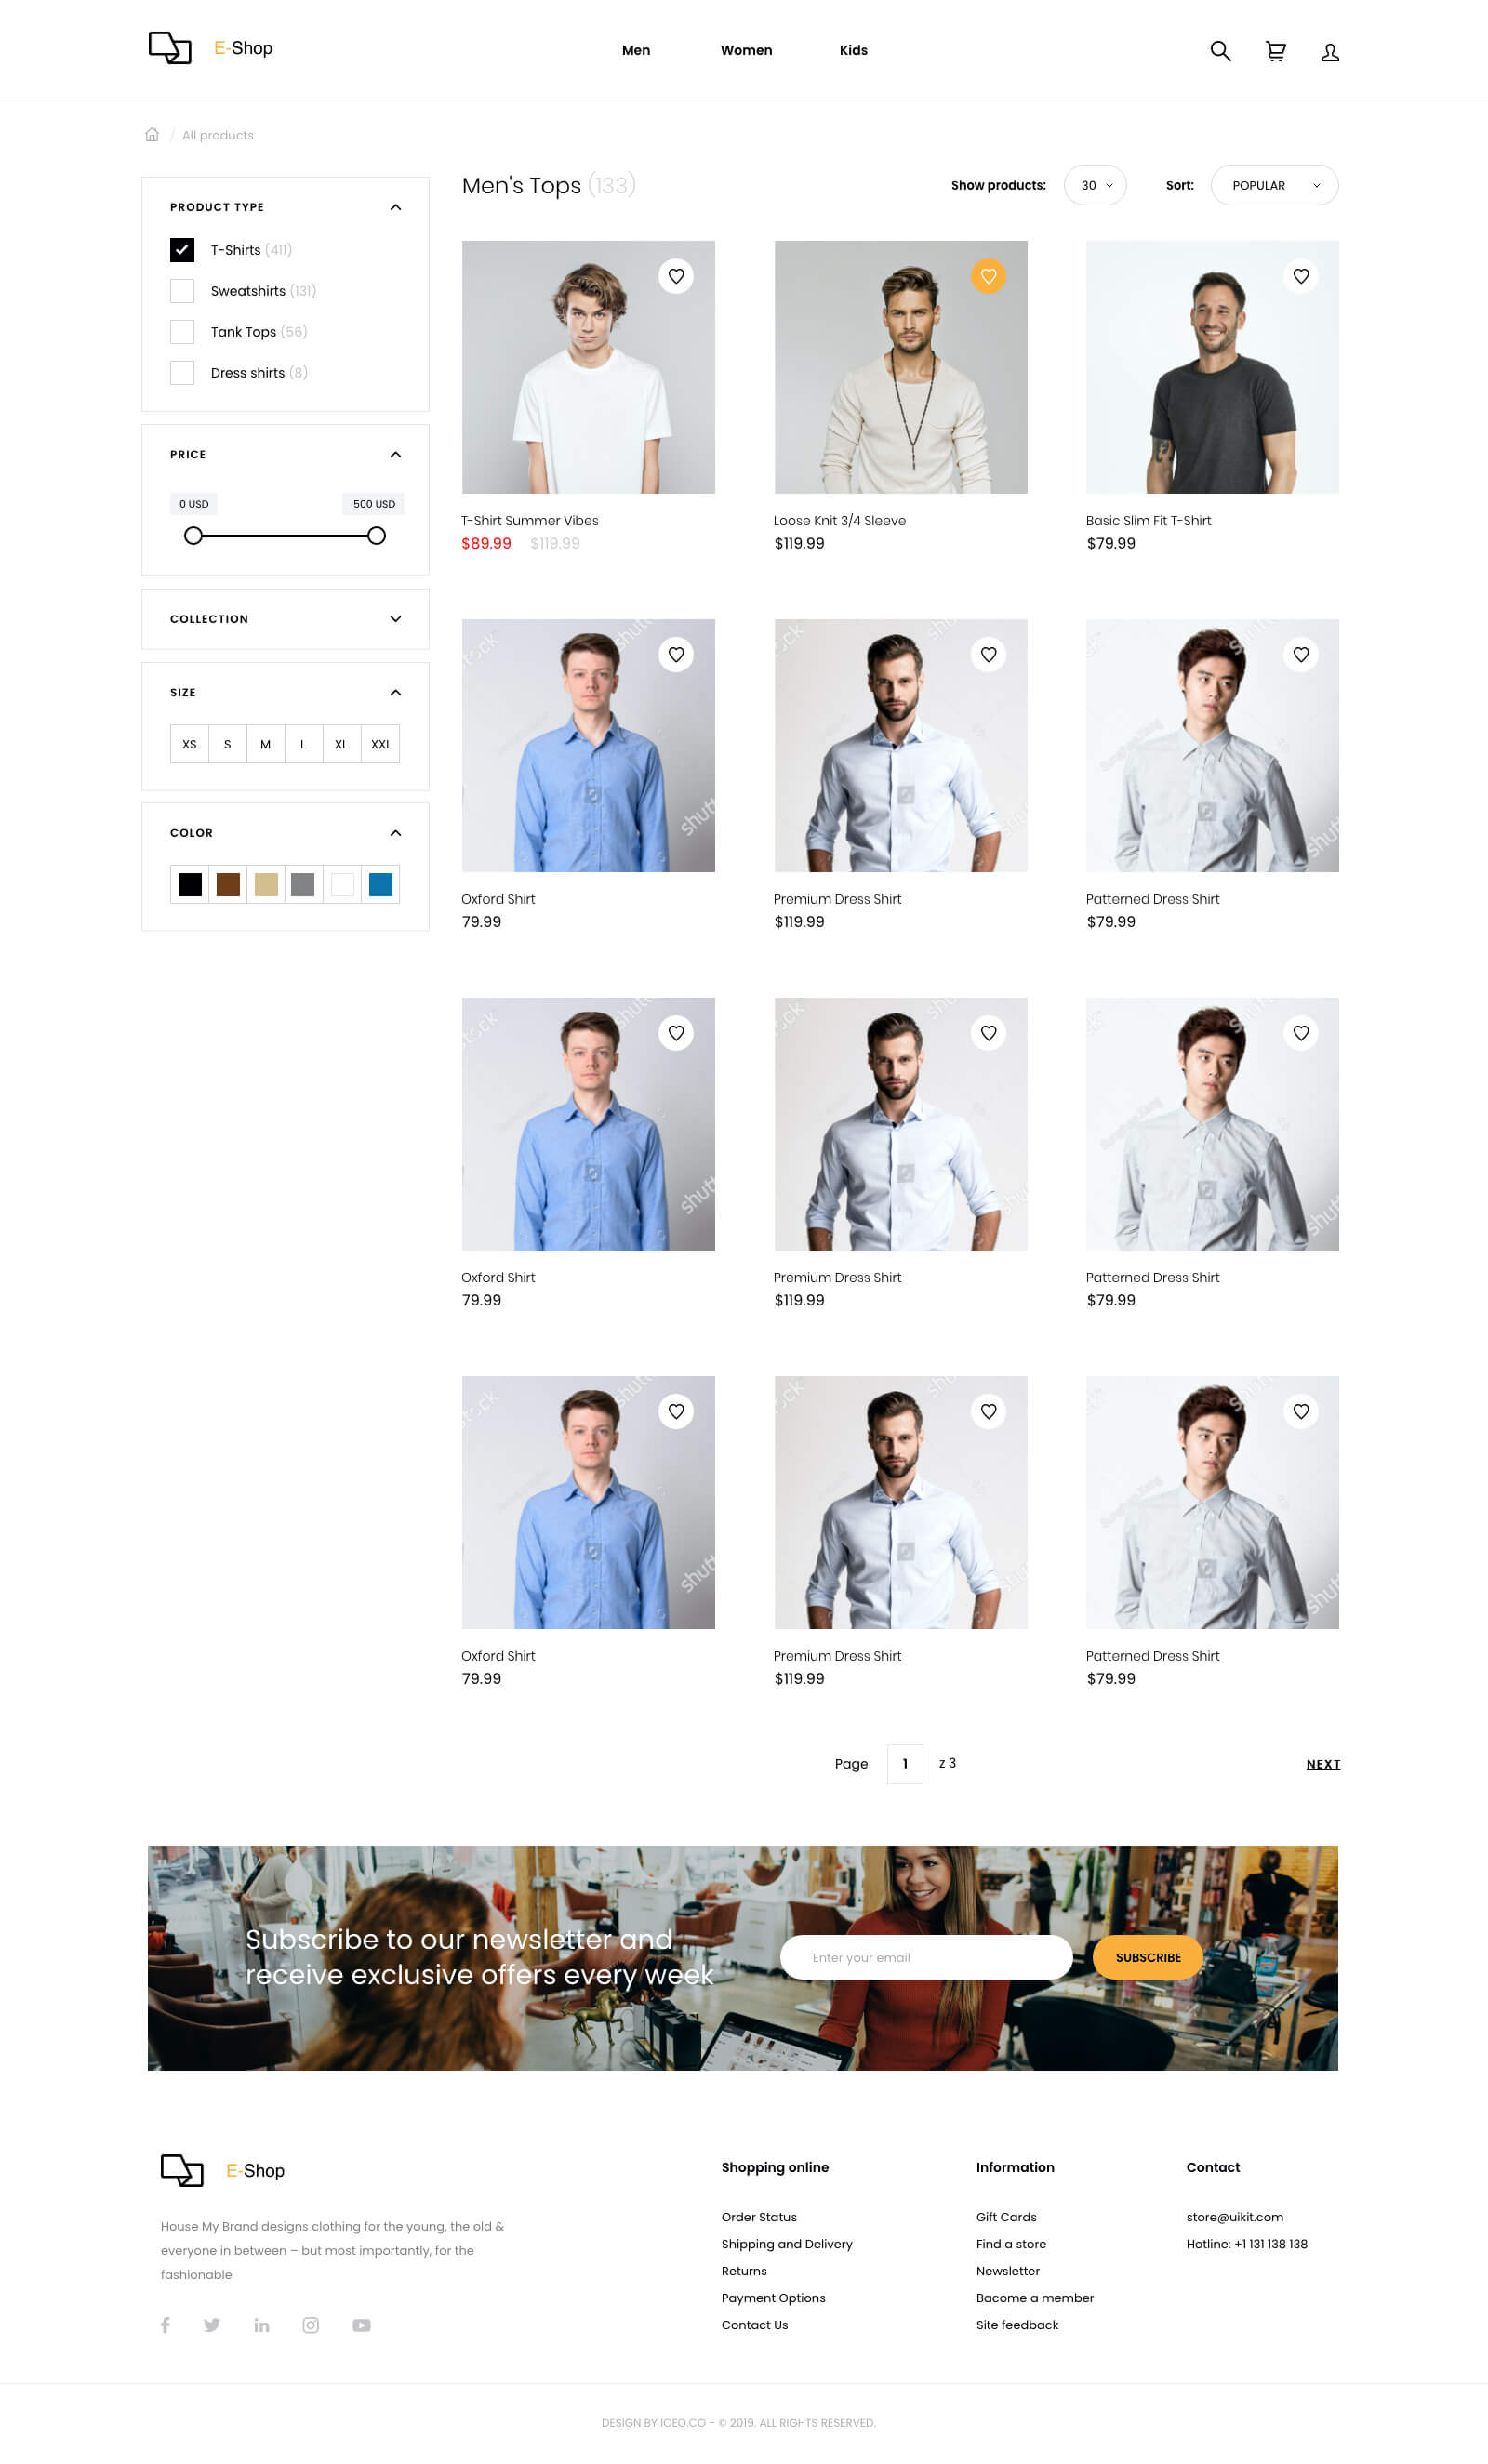 简约大气时尚家具服饰电商网站WEB UI界面设计 .xd素材